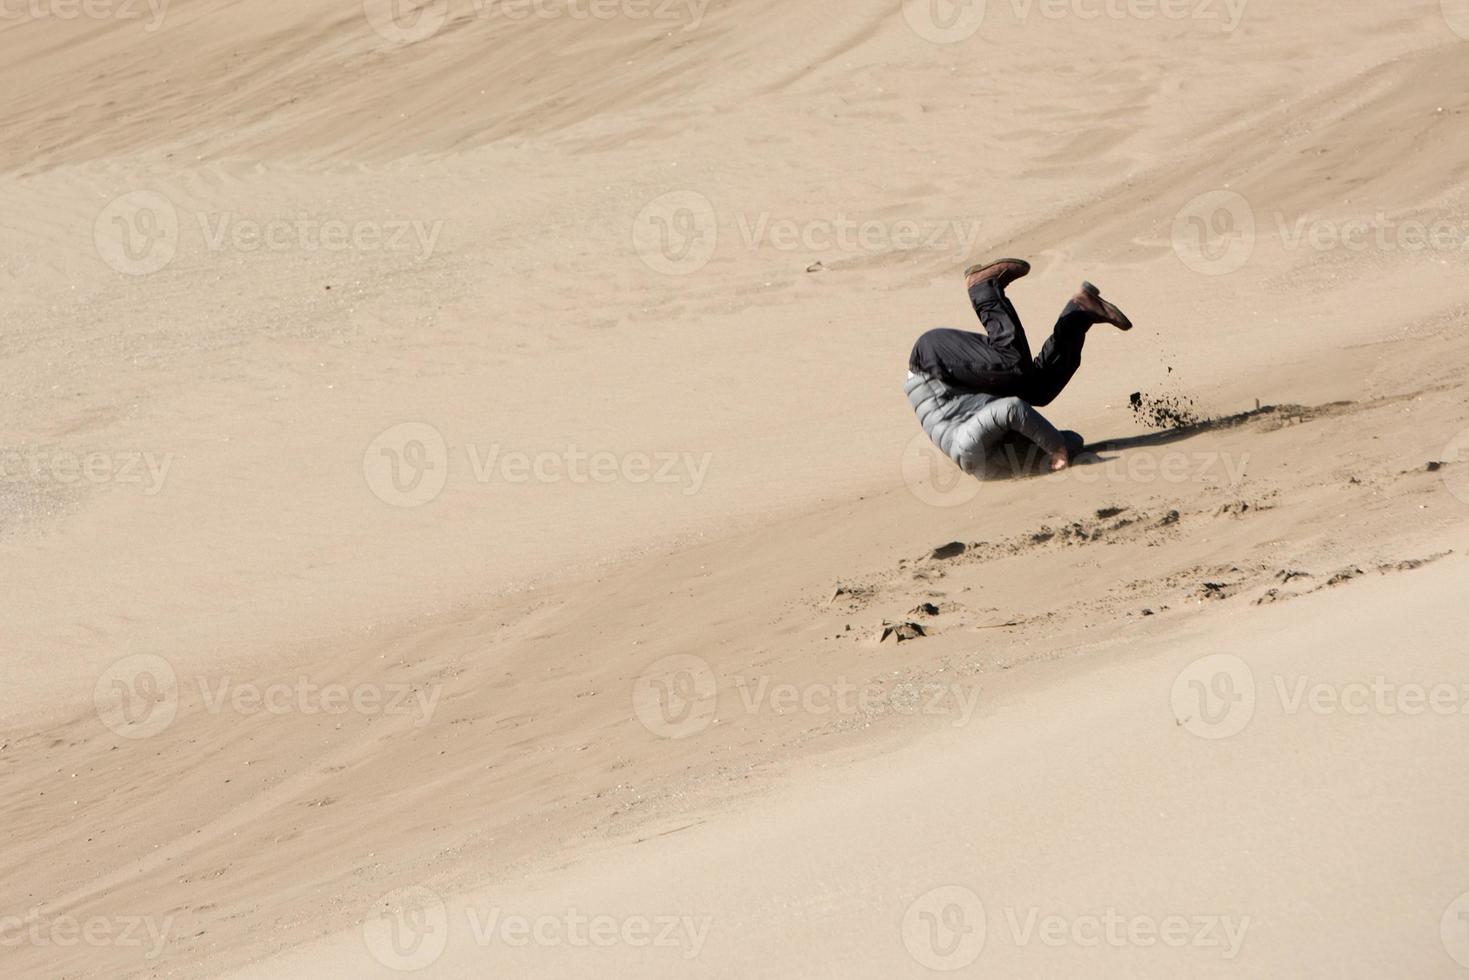 homem rolando em areia dunas foto